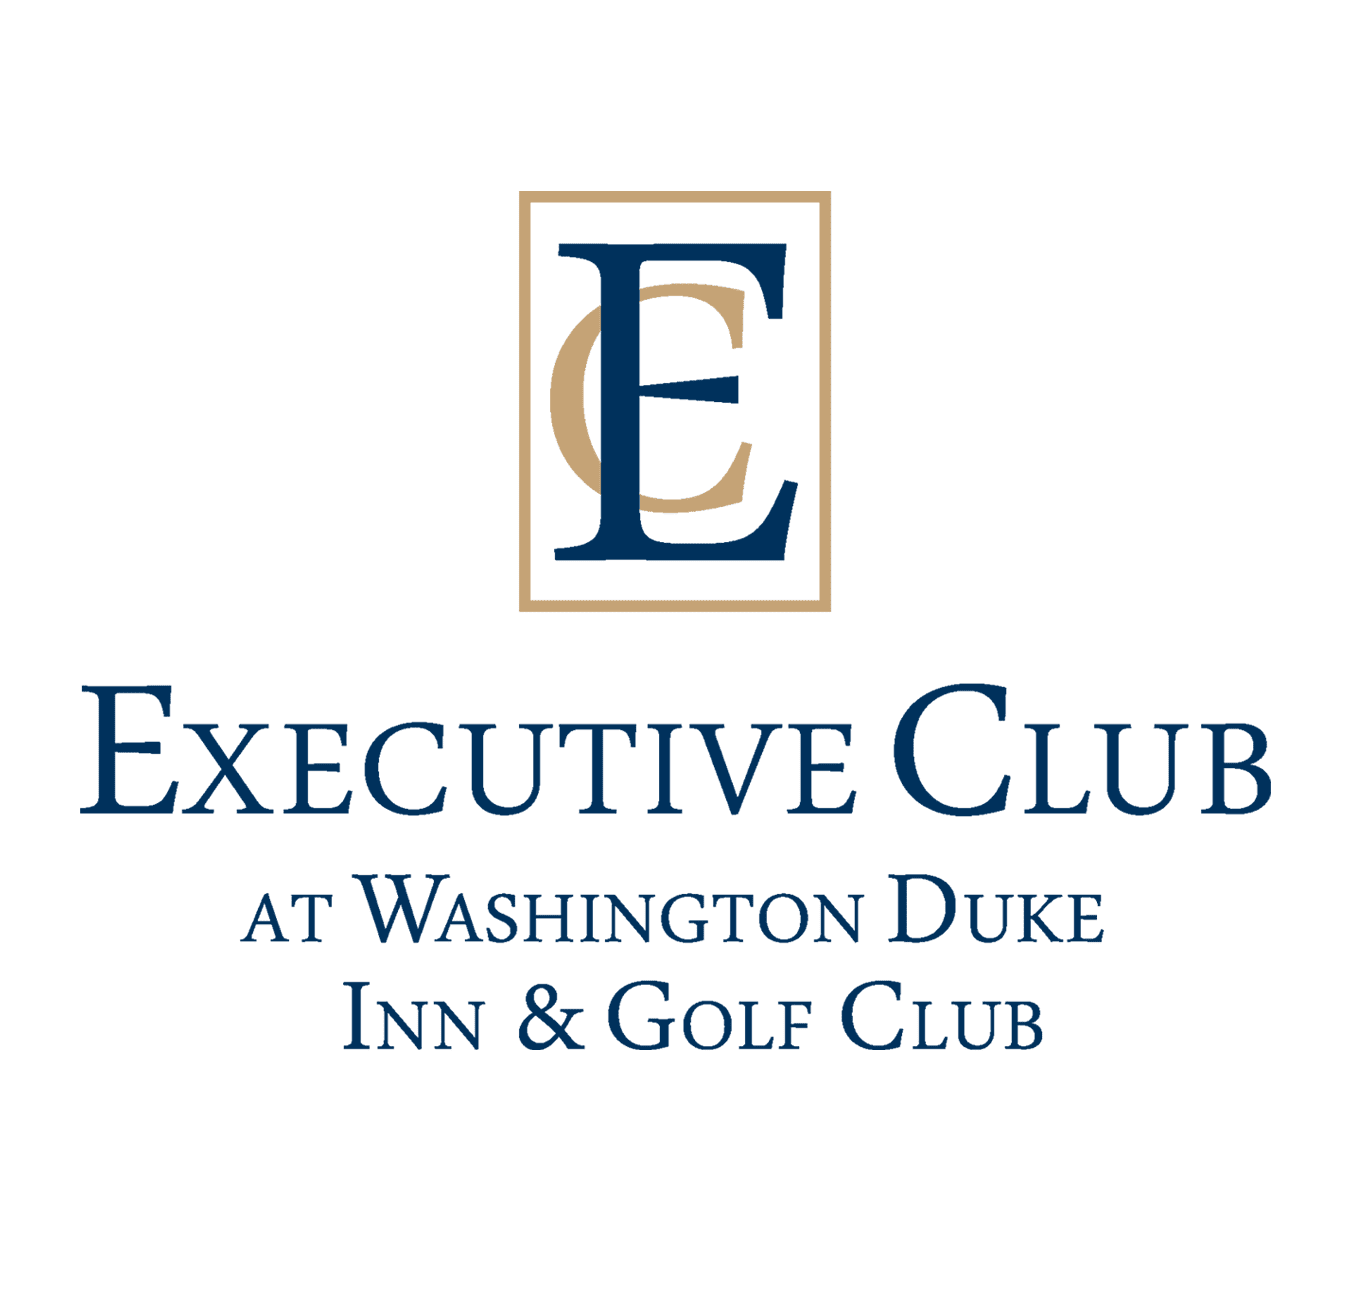 Executive Club at Washington Duke Inn & Golf Club